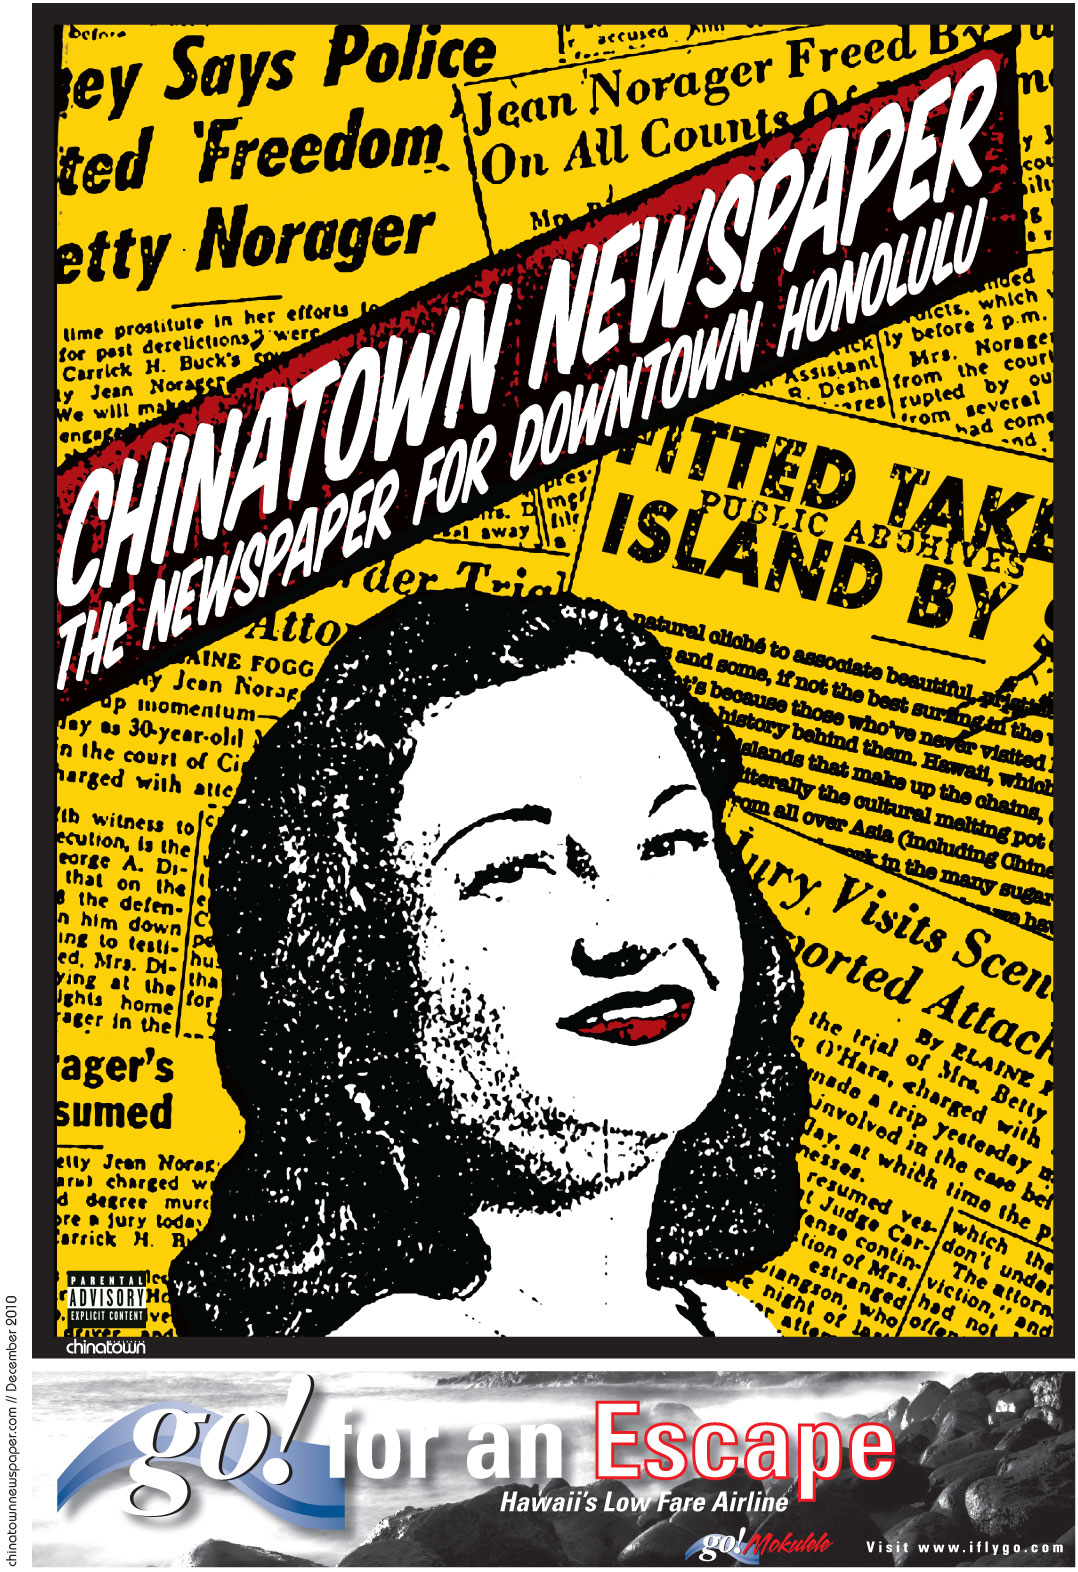 Chinatown Newspaper december 2010 1